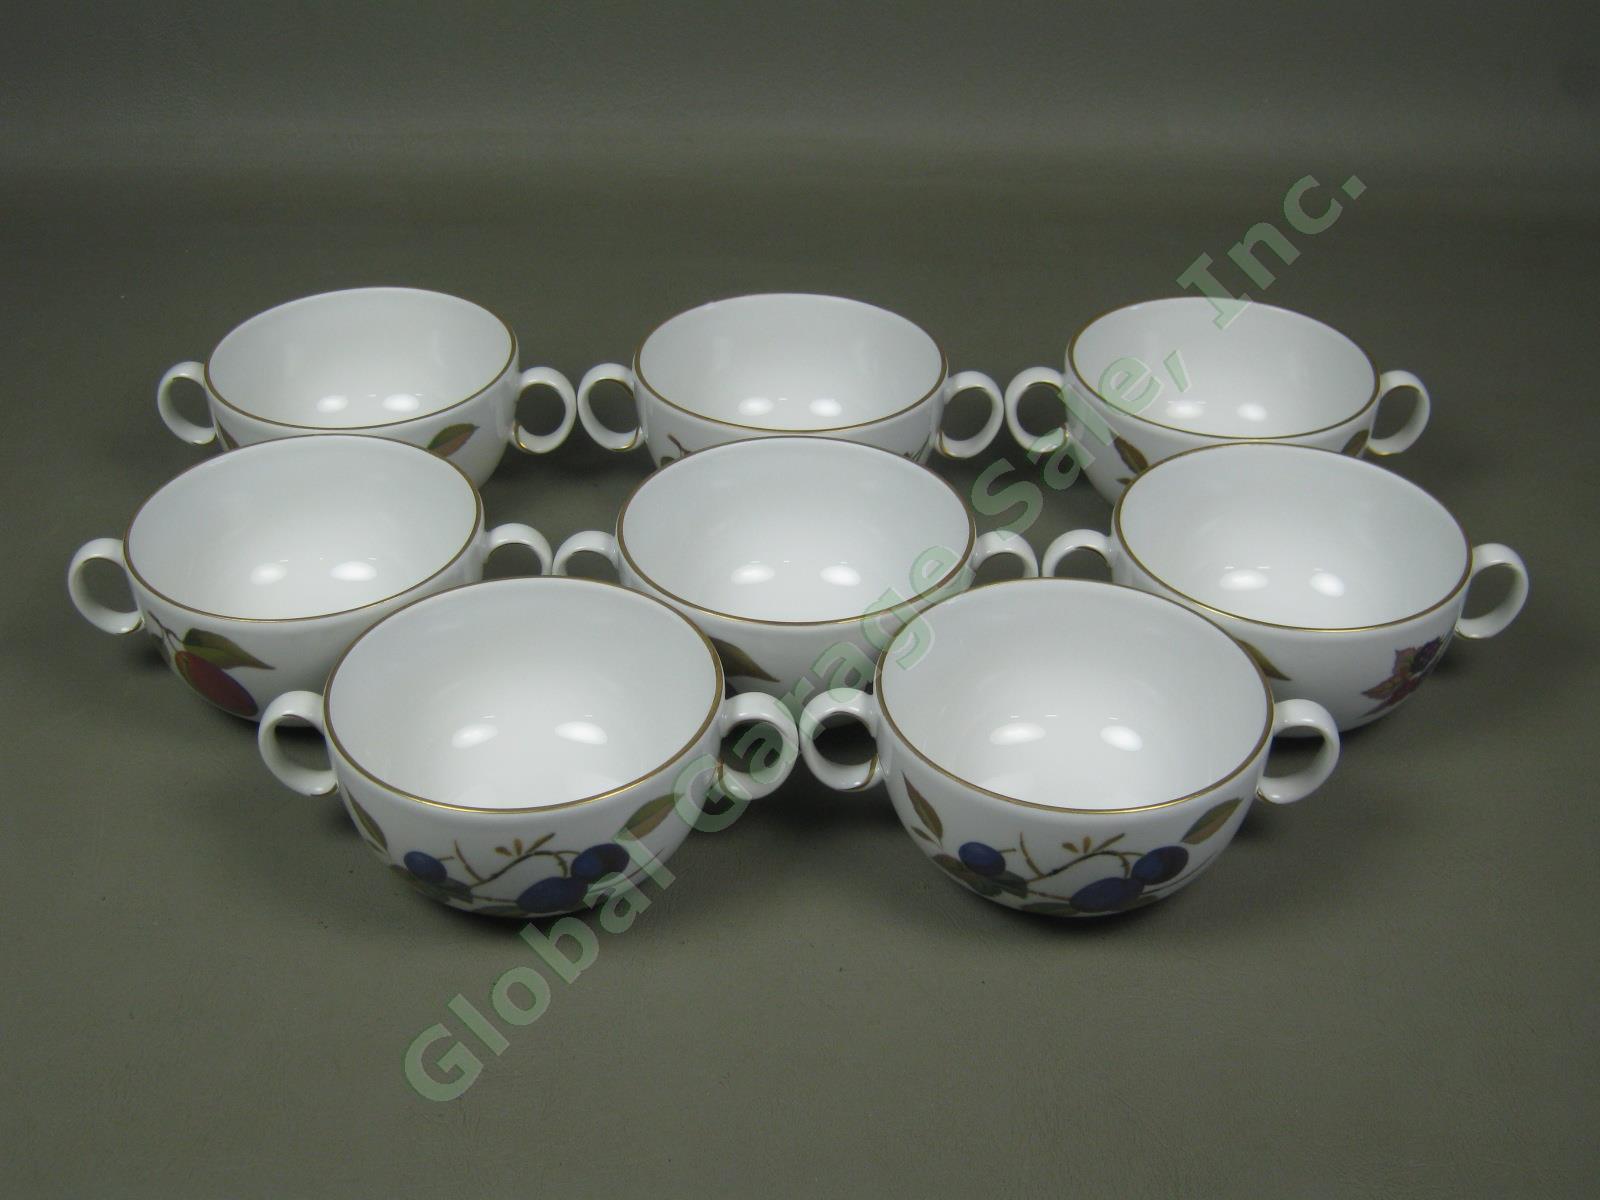 8 1961 Royal Worcester Evesham Porcelain China Cream Soup Bowl 8 Saucer Set 1